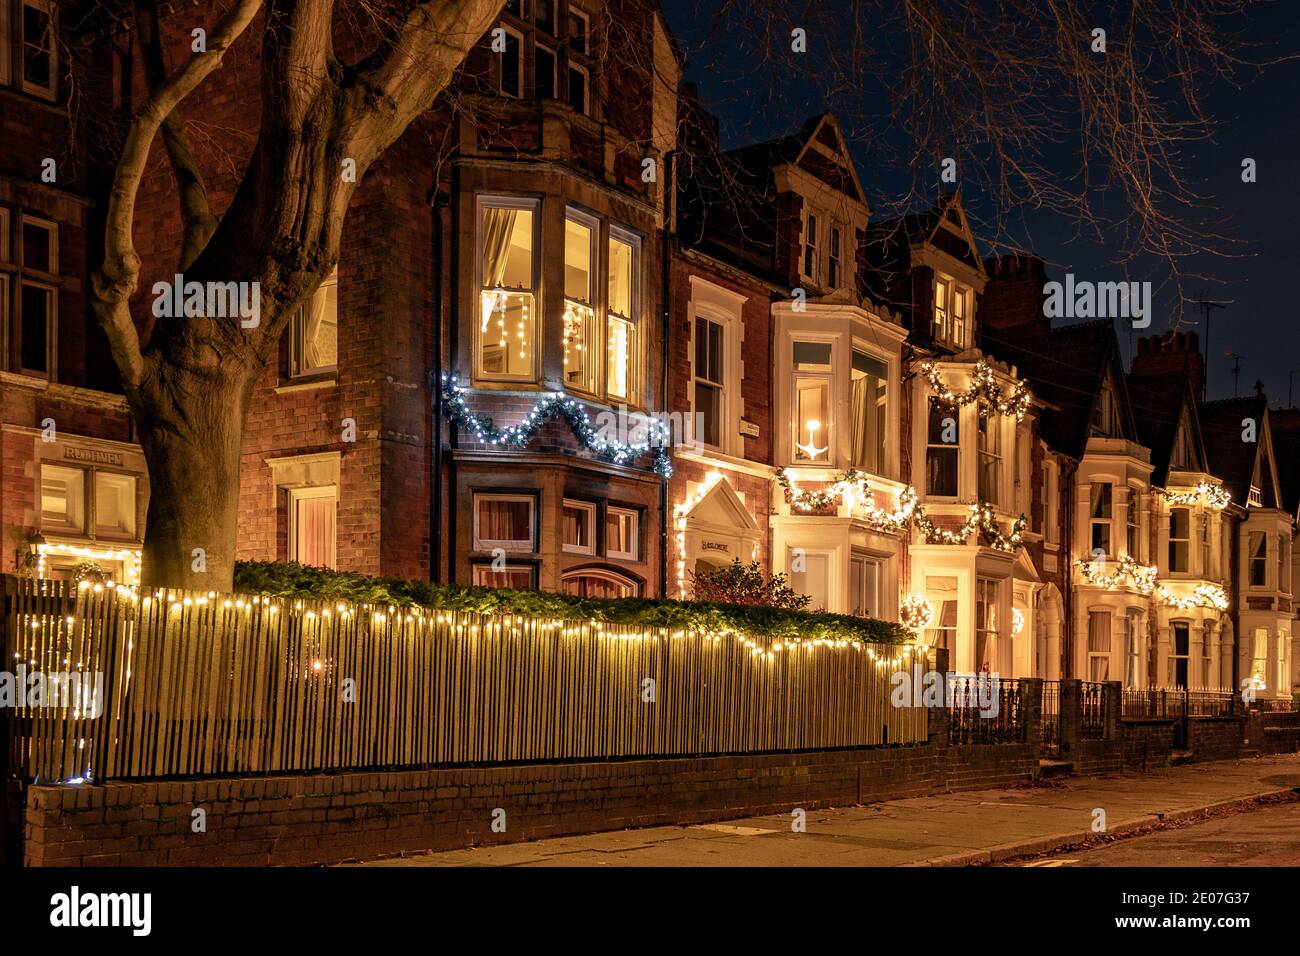 Accoglienti case a schiera con vista sulla baia in Inghilterra a Natale Foto Stock